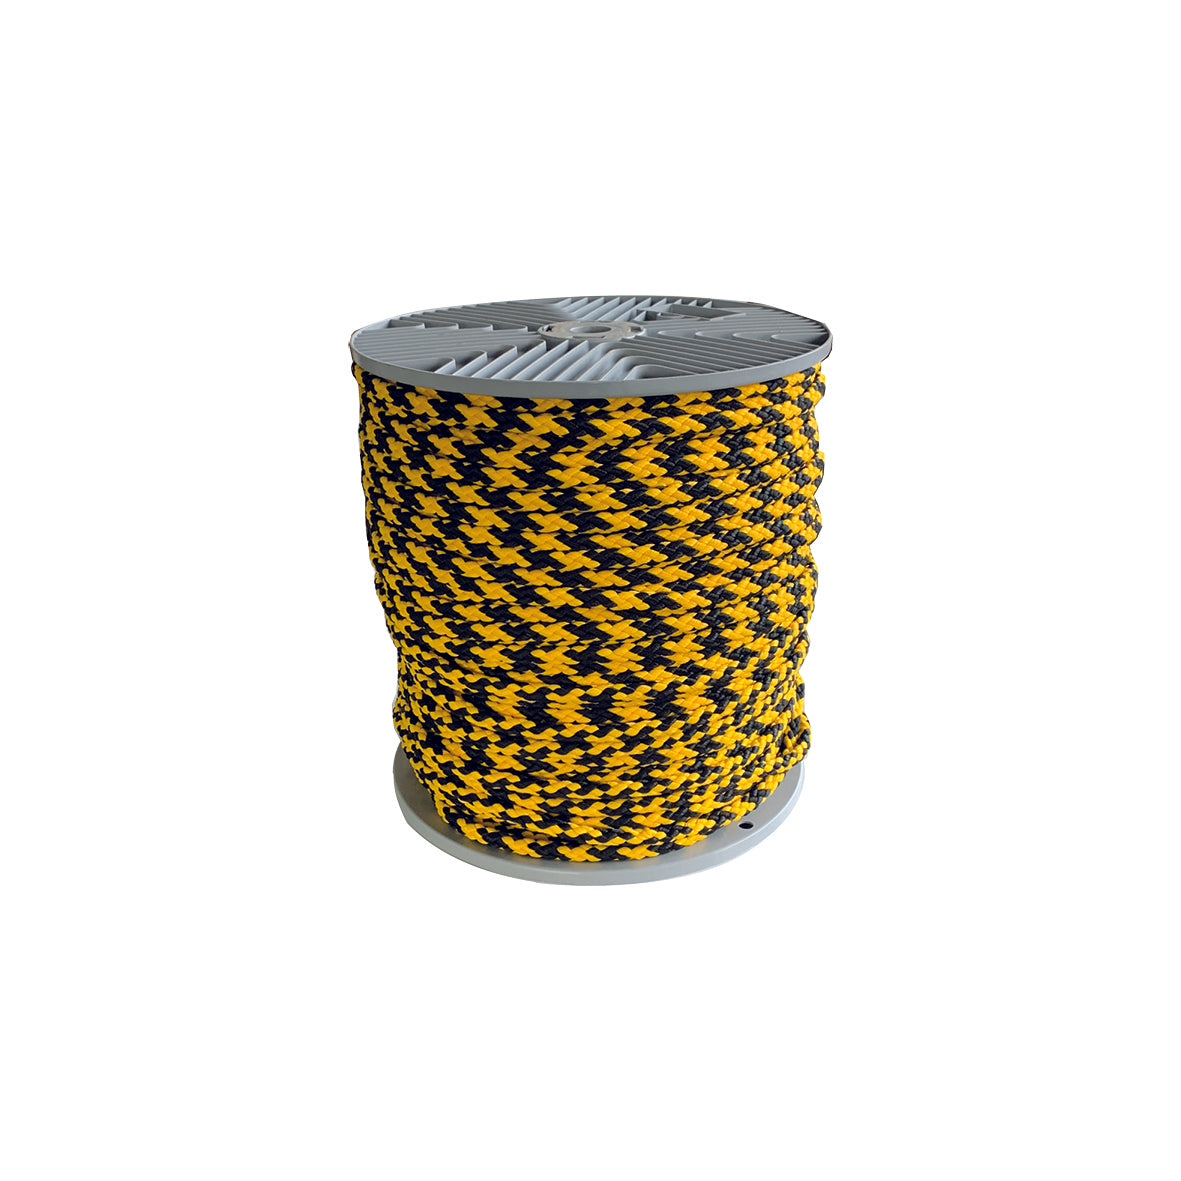 Absperrseil, gelb-schwarz, geflochten, 200 m, ø 8 mm, PP = Polypropylen